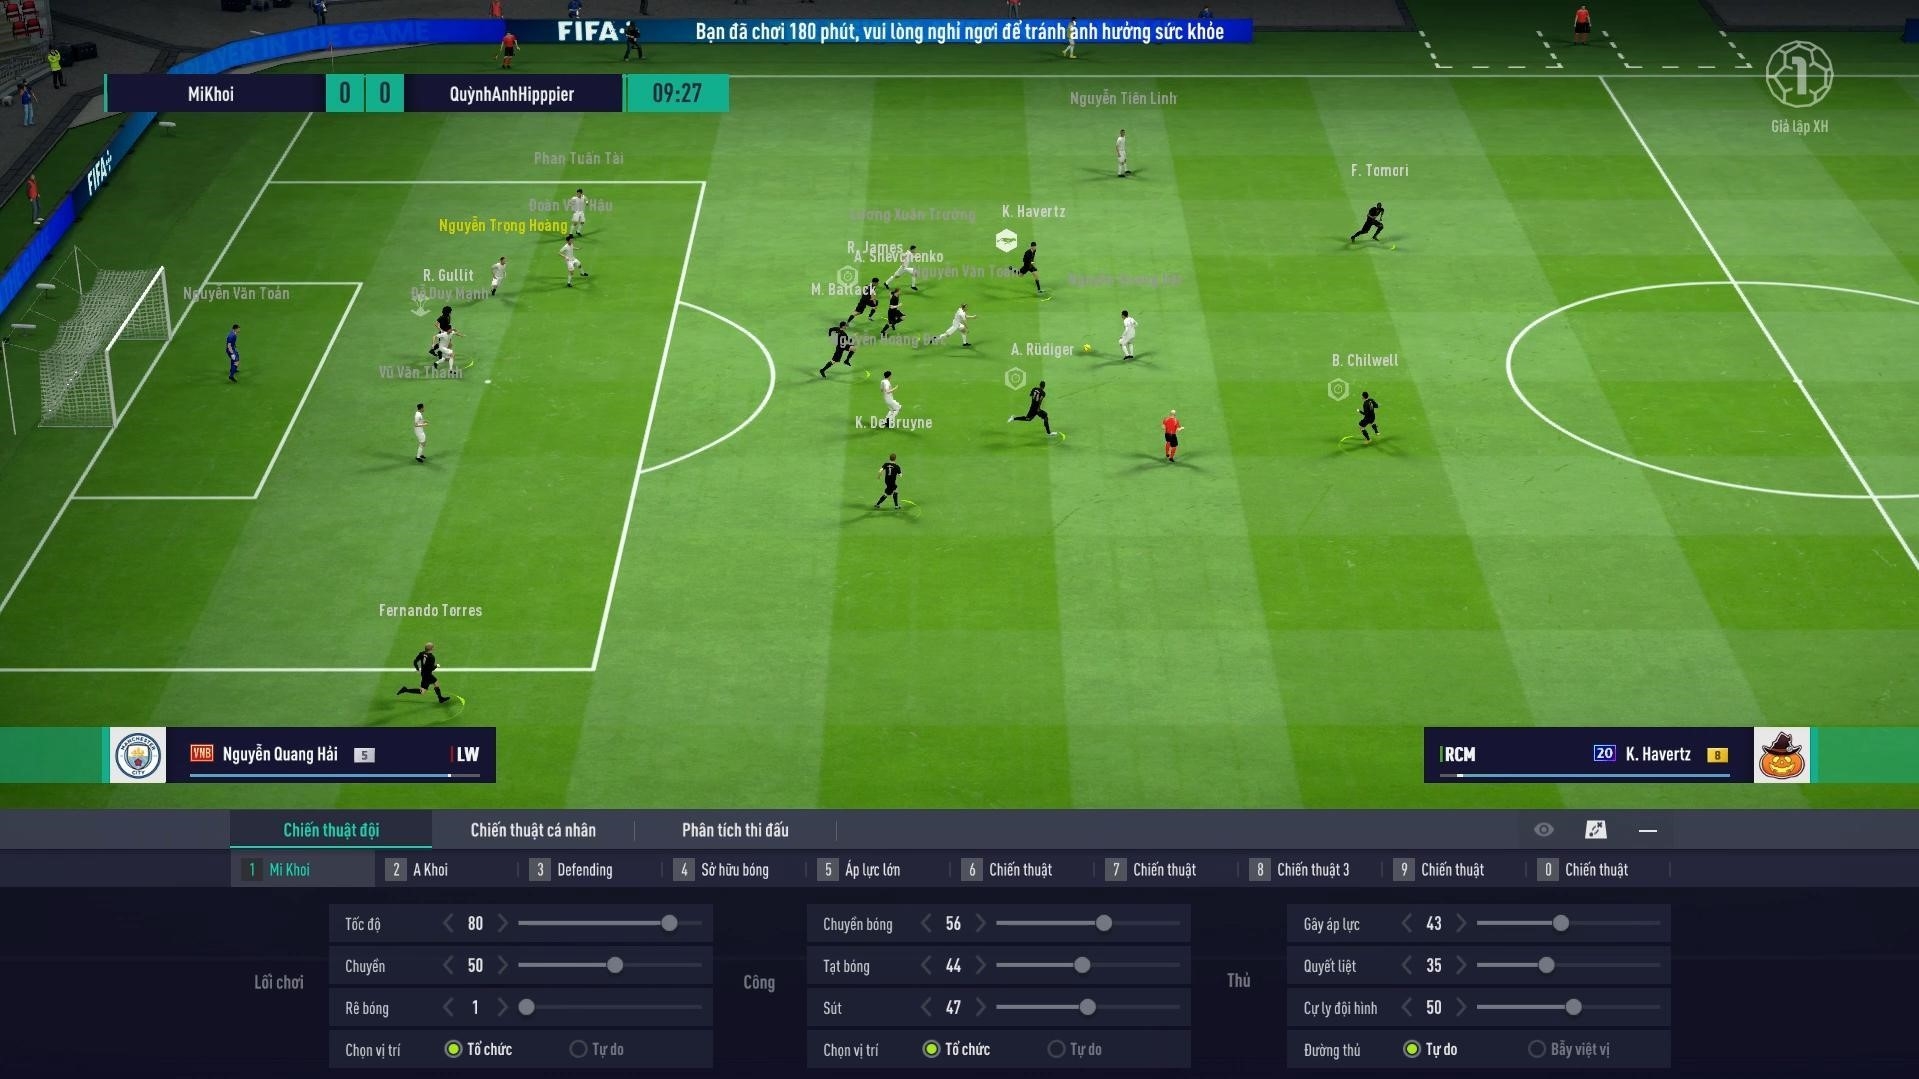 Thời lượng của một trận FIFA Online 4 là bao nhiêu phút?